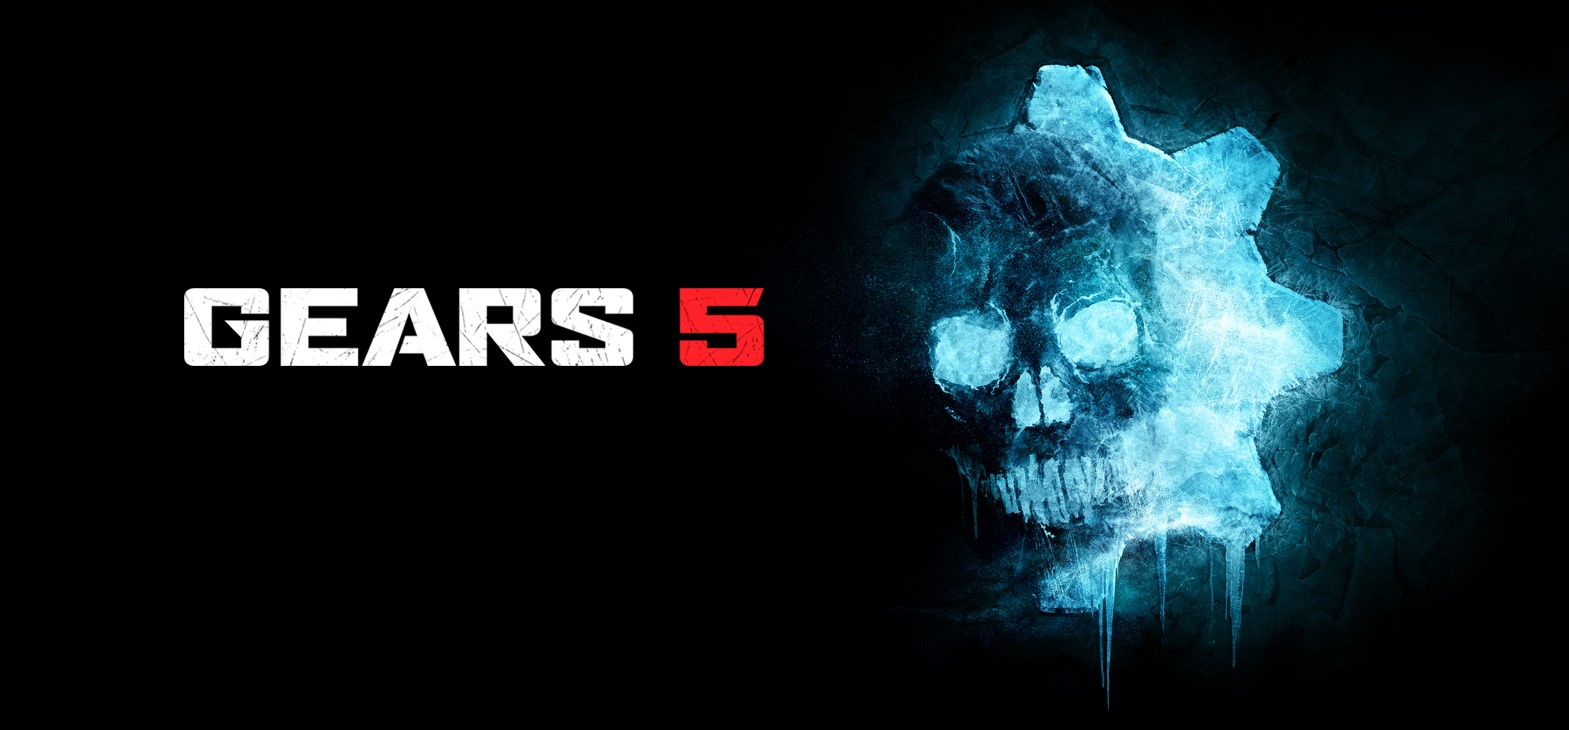 "Gears 5 bukan bagian dari trilogi, tetapi hikayat yang akan terus tumbuh"